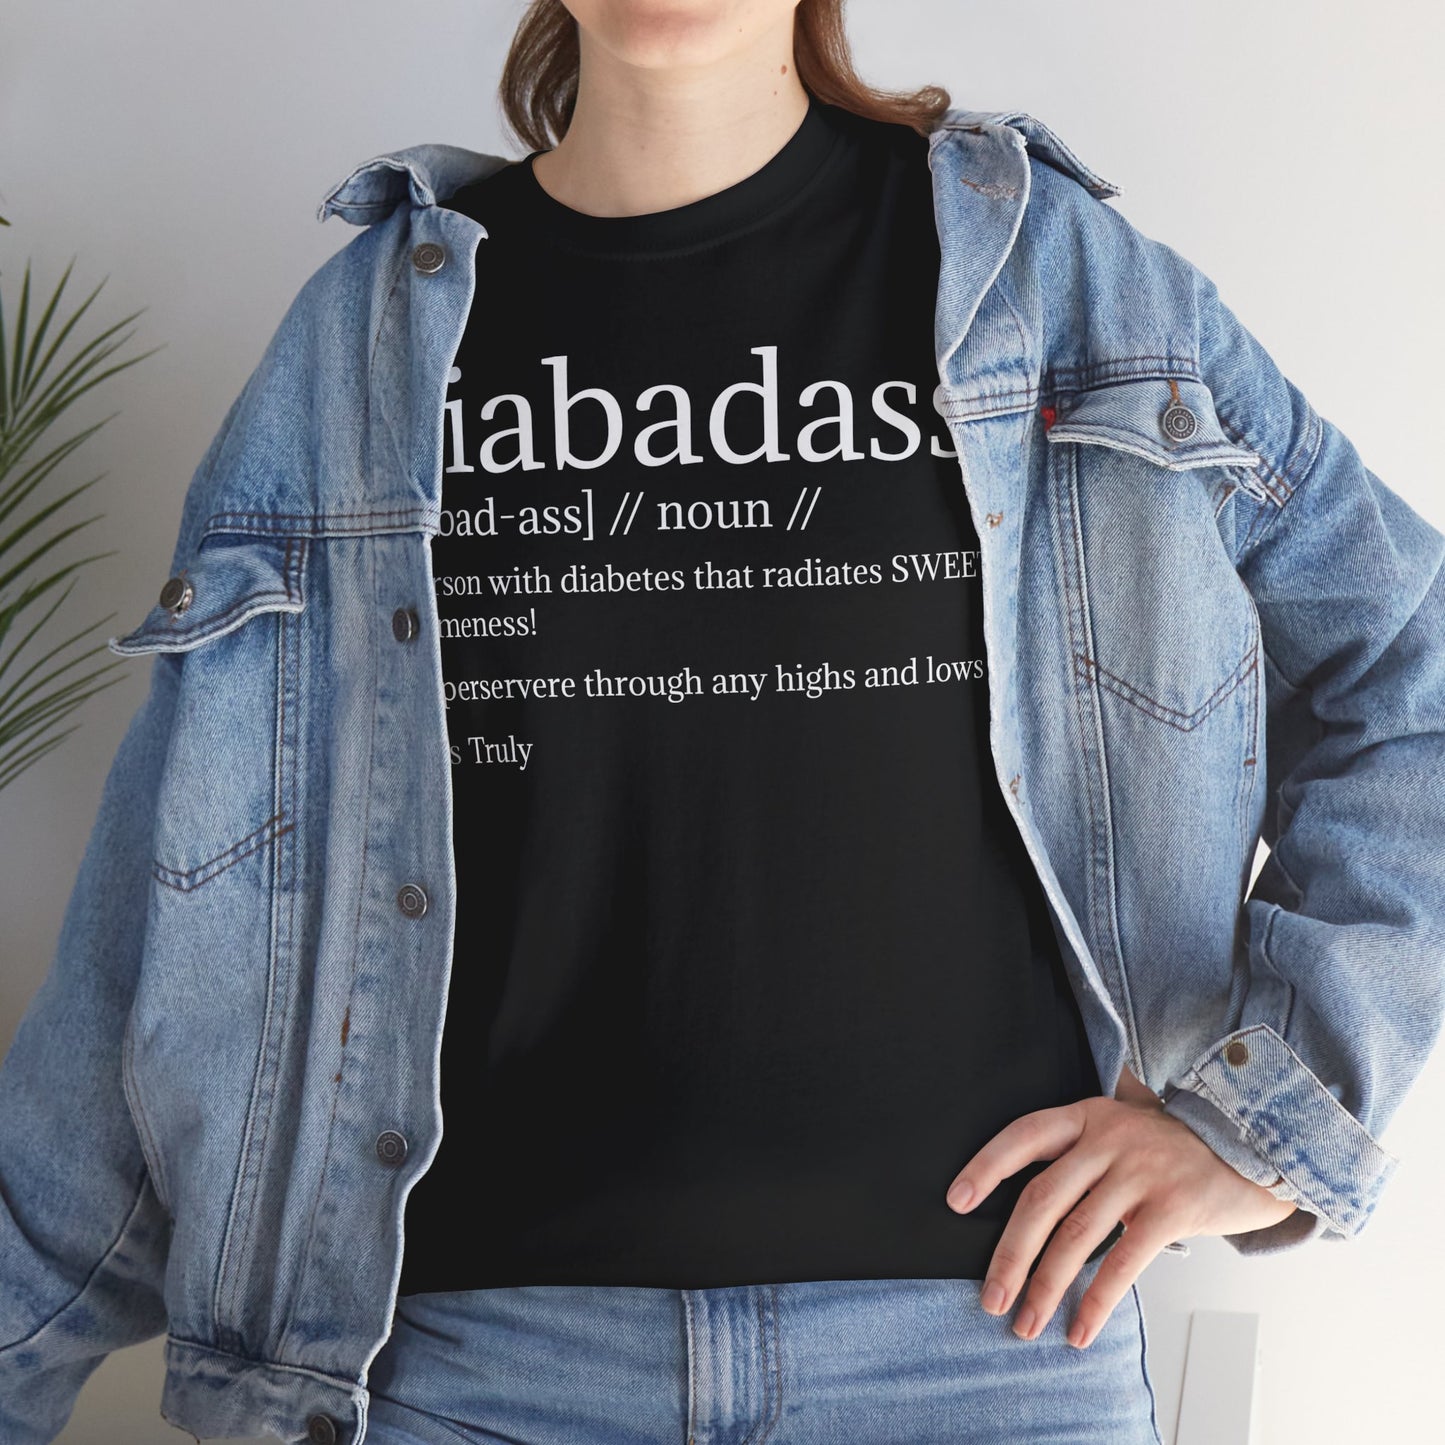 Diabadass T-Shirt